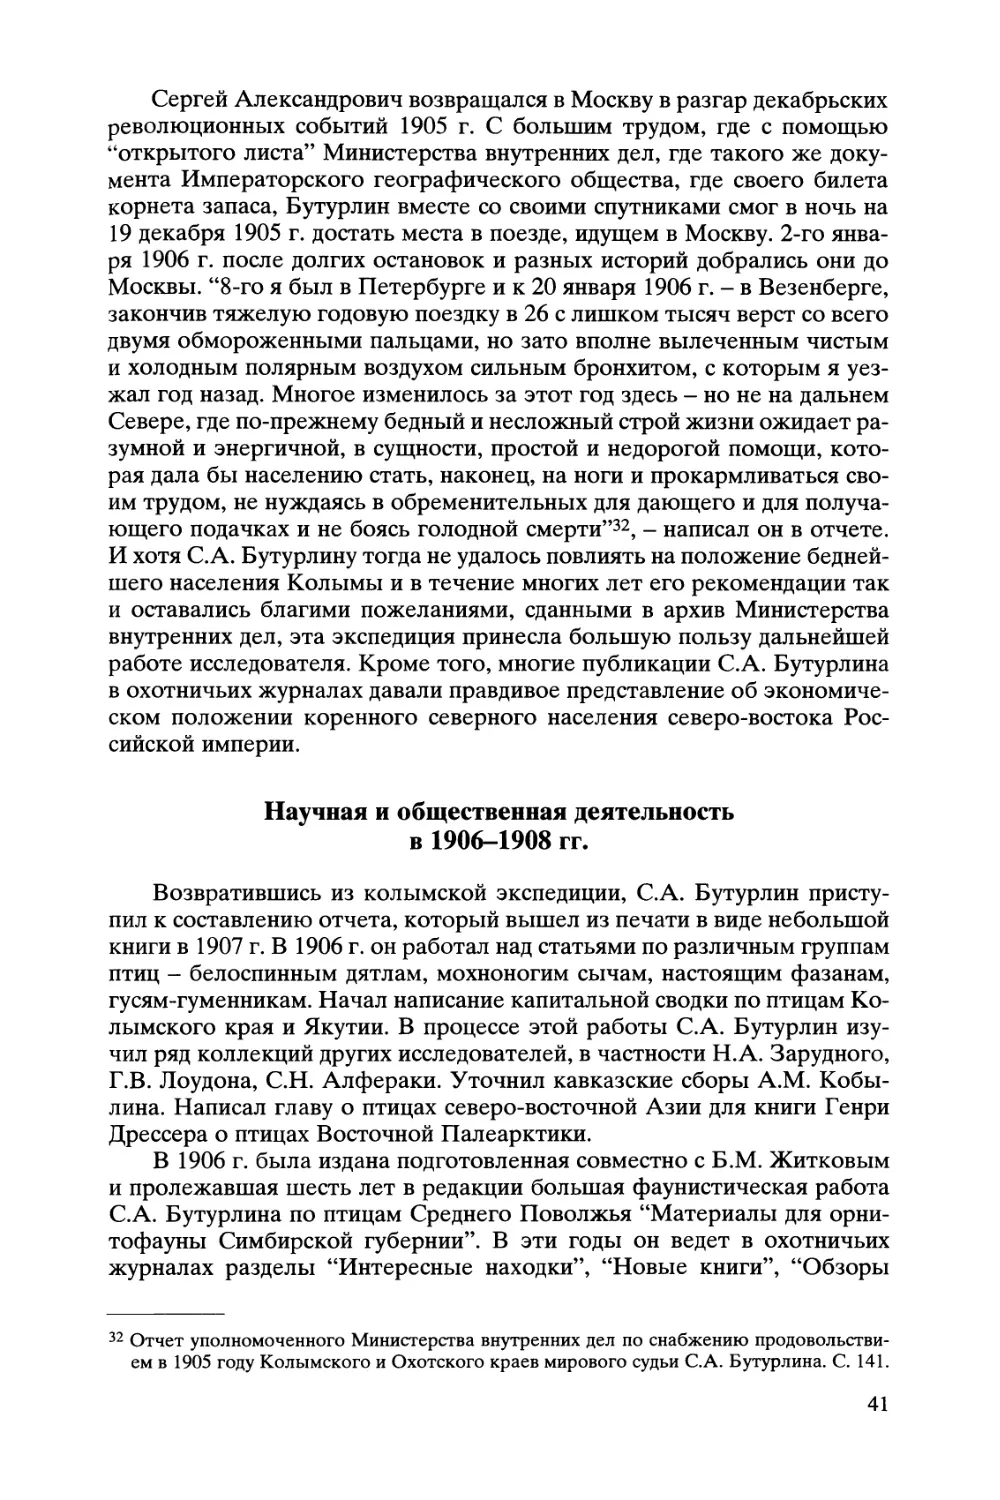 Научная и общественная деятельность в 1906-1908 гг.